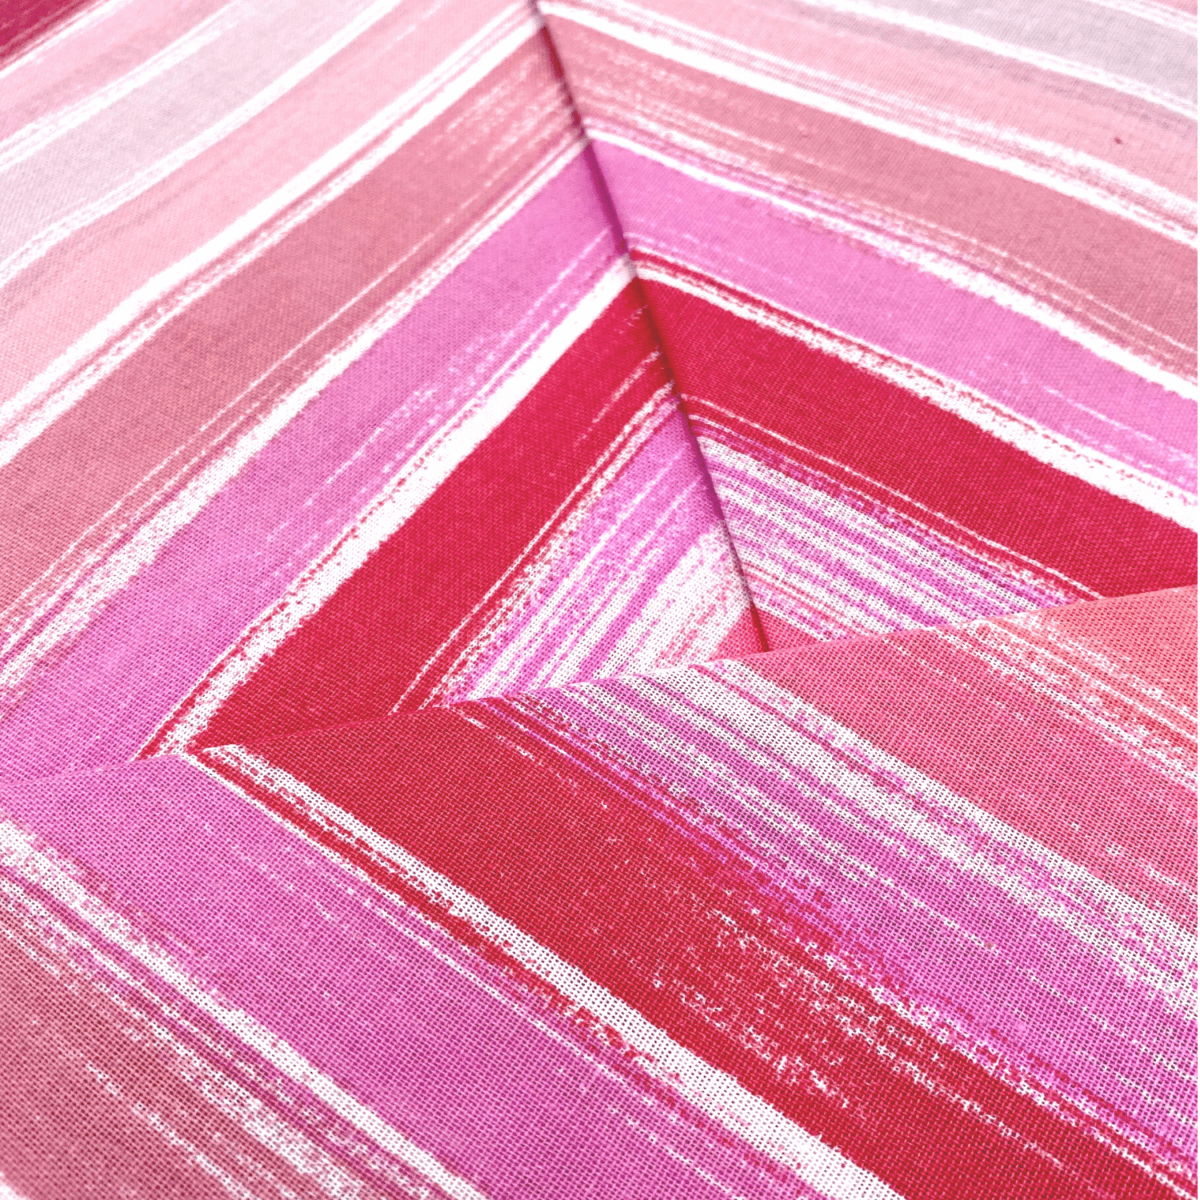 completo-lenzuola--strisce-orizzontali-rosa-penelope-fuxia-bianco-geometrico-rigato-classico-fold-dettaglio